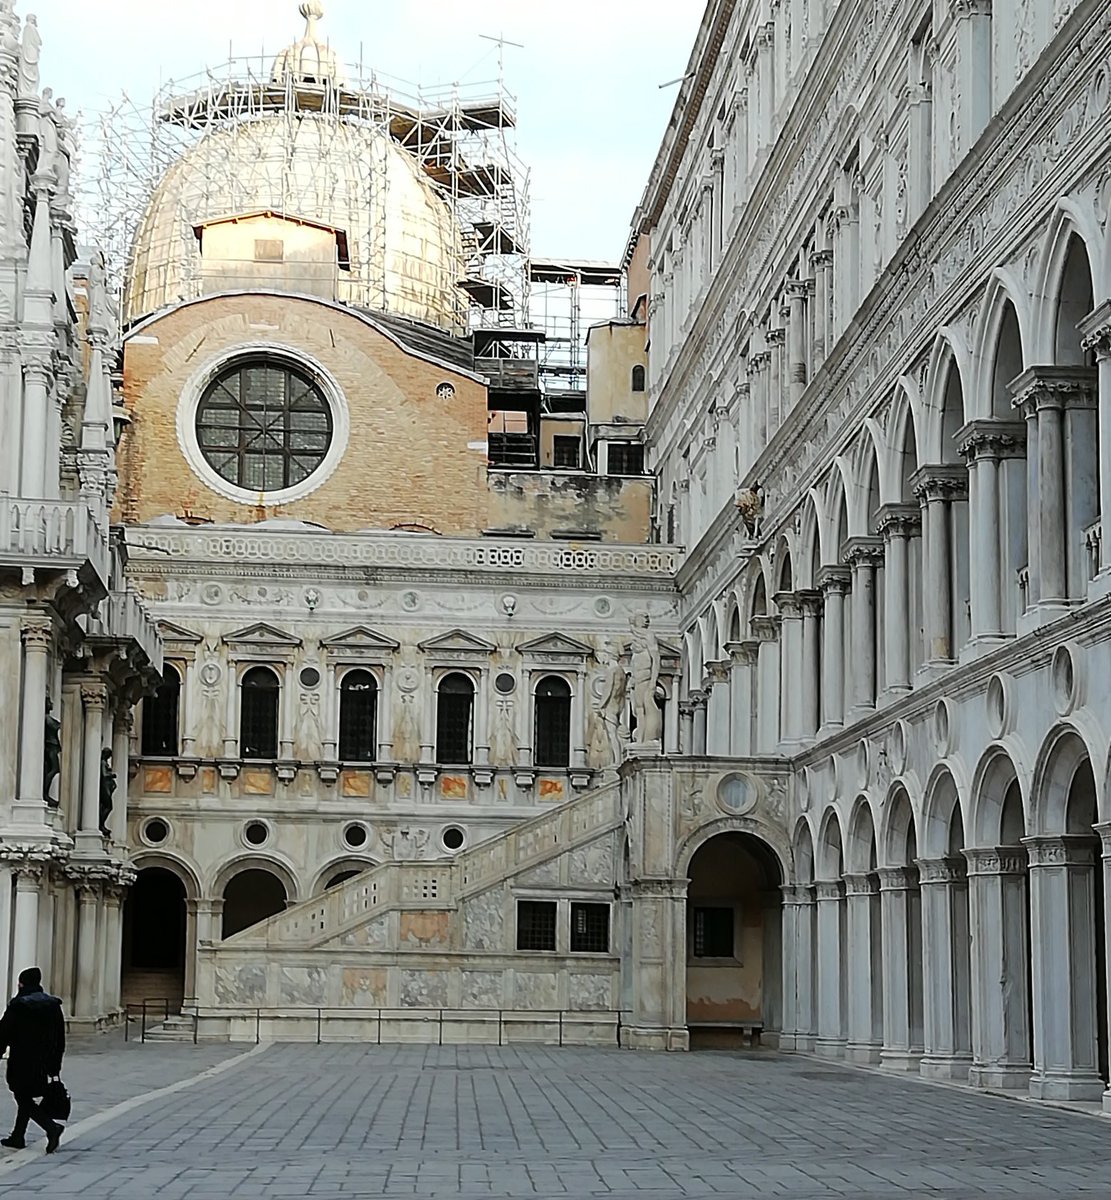 Cortile interno di #palazzoducale #Venezia #Venice #Venicephotography #arteaVenezia #scultura #architettura #palazziveneziani